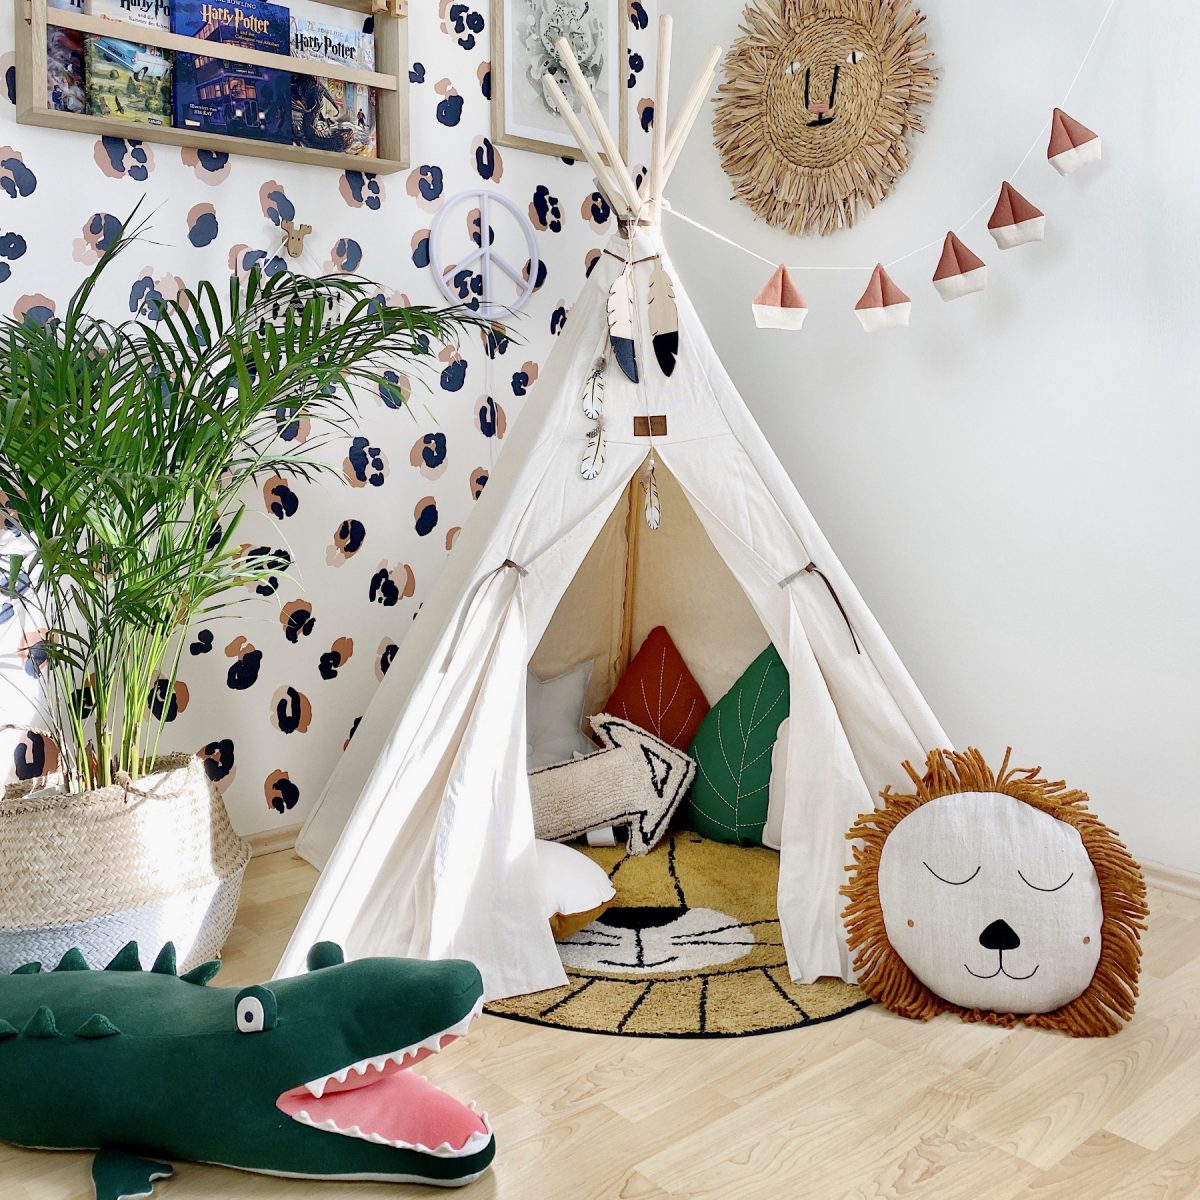 Fantasyroom Blog: Die schönsten Instagram Kinderzimmer - Spielecke mit Tipi und Kuscheltieren